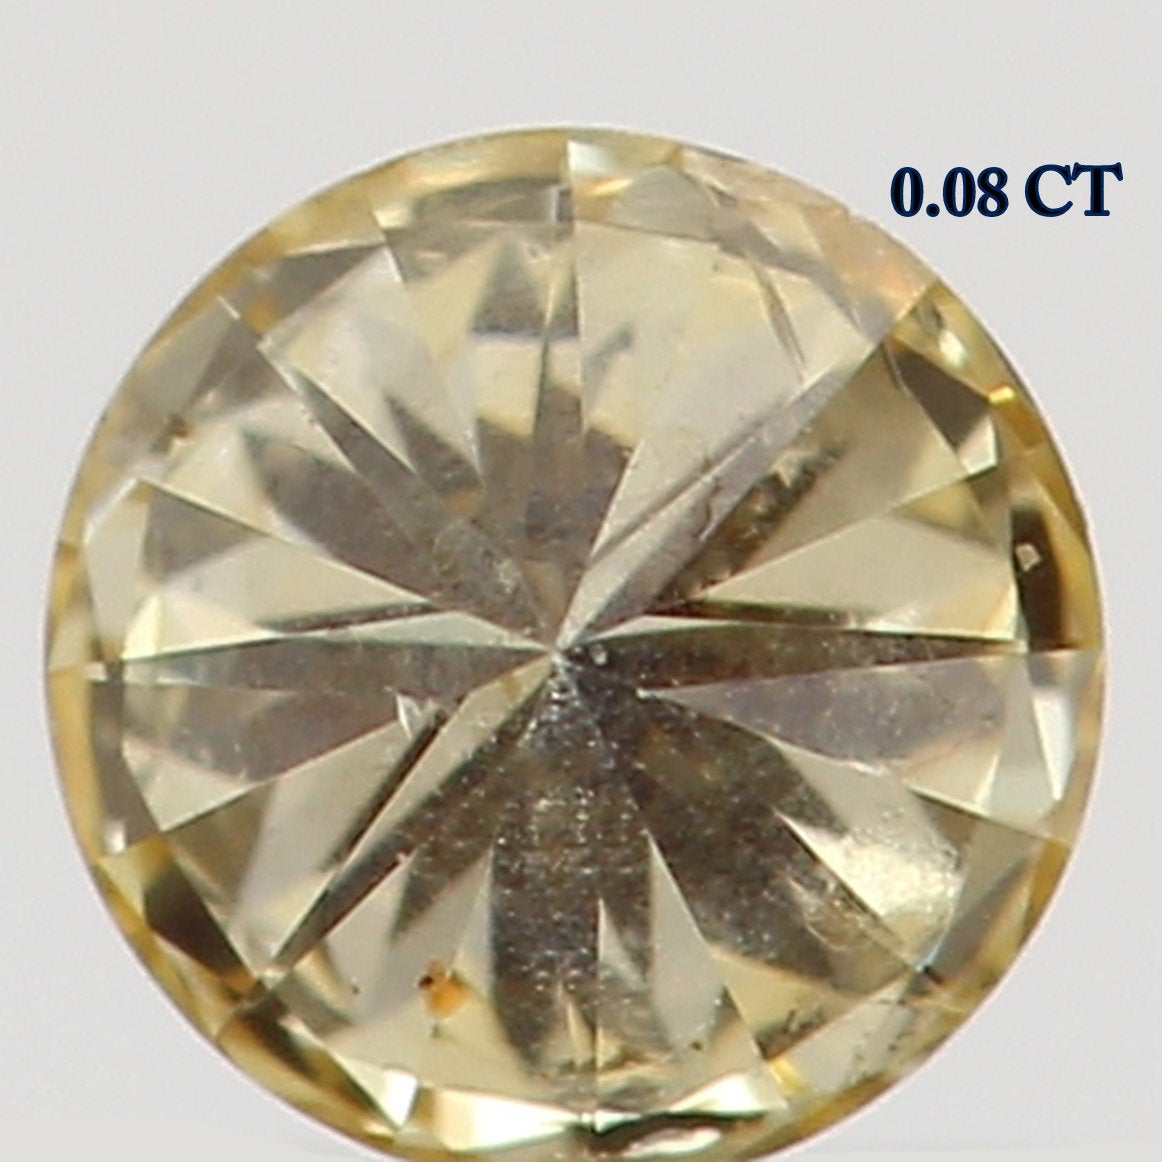 0.08 Ct Natural Loose Diamond, Orange Diamond, Yellow Diamond, Round Diamond, Round Brilliant Cut, Sparkling Diamond, Rustic Diamond L5154